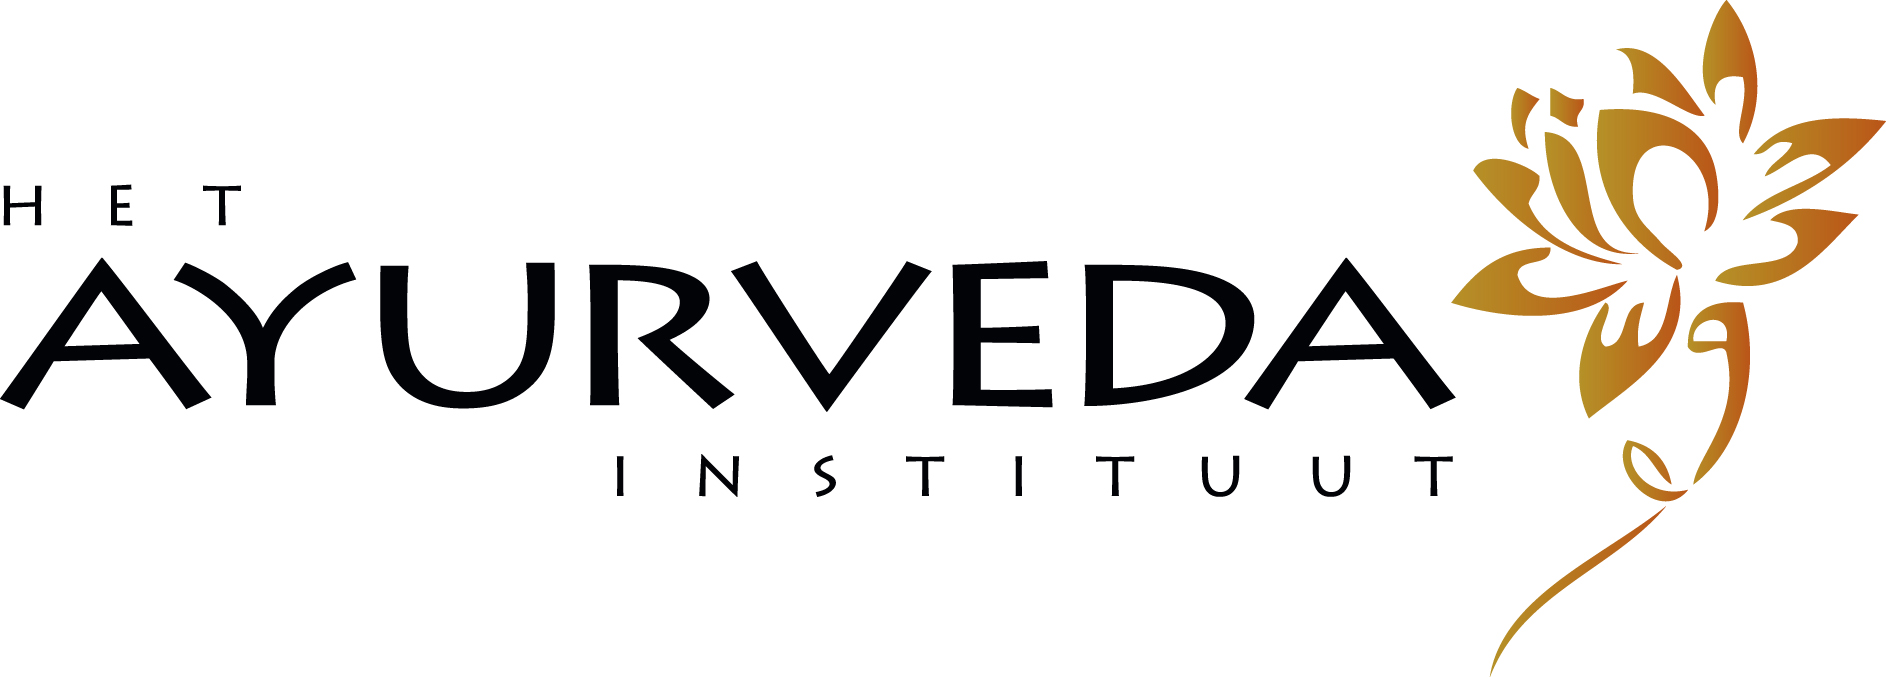 Het Ayurveda Instituut